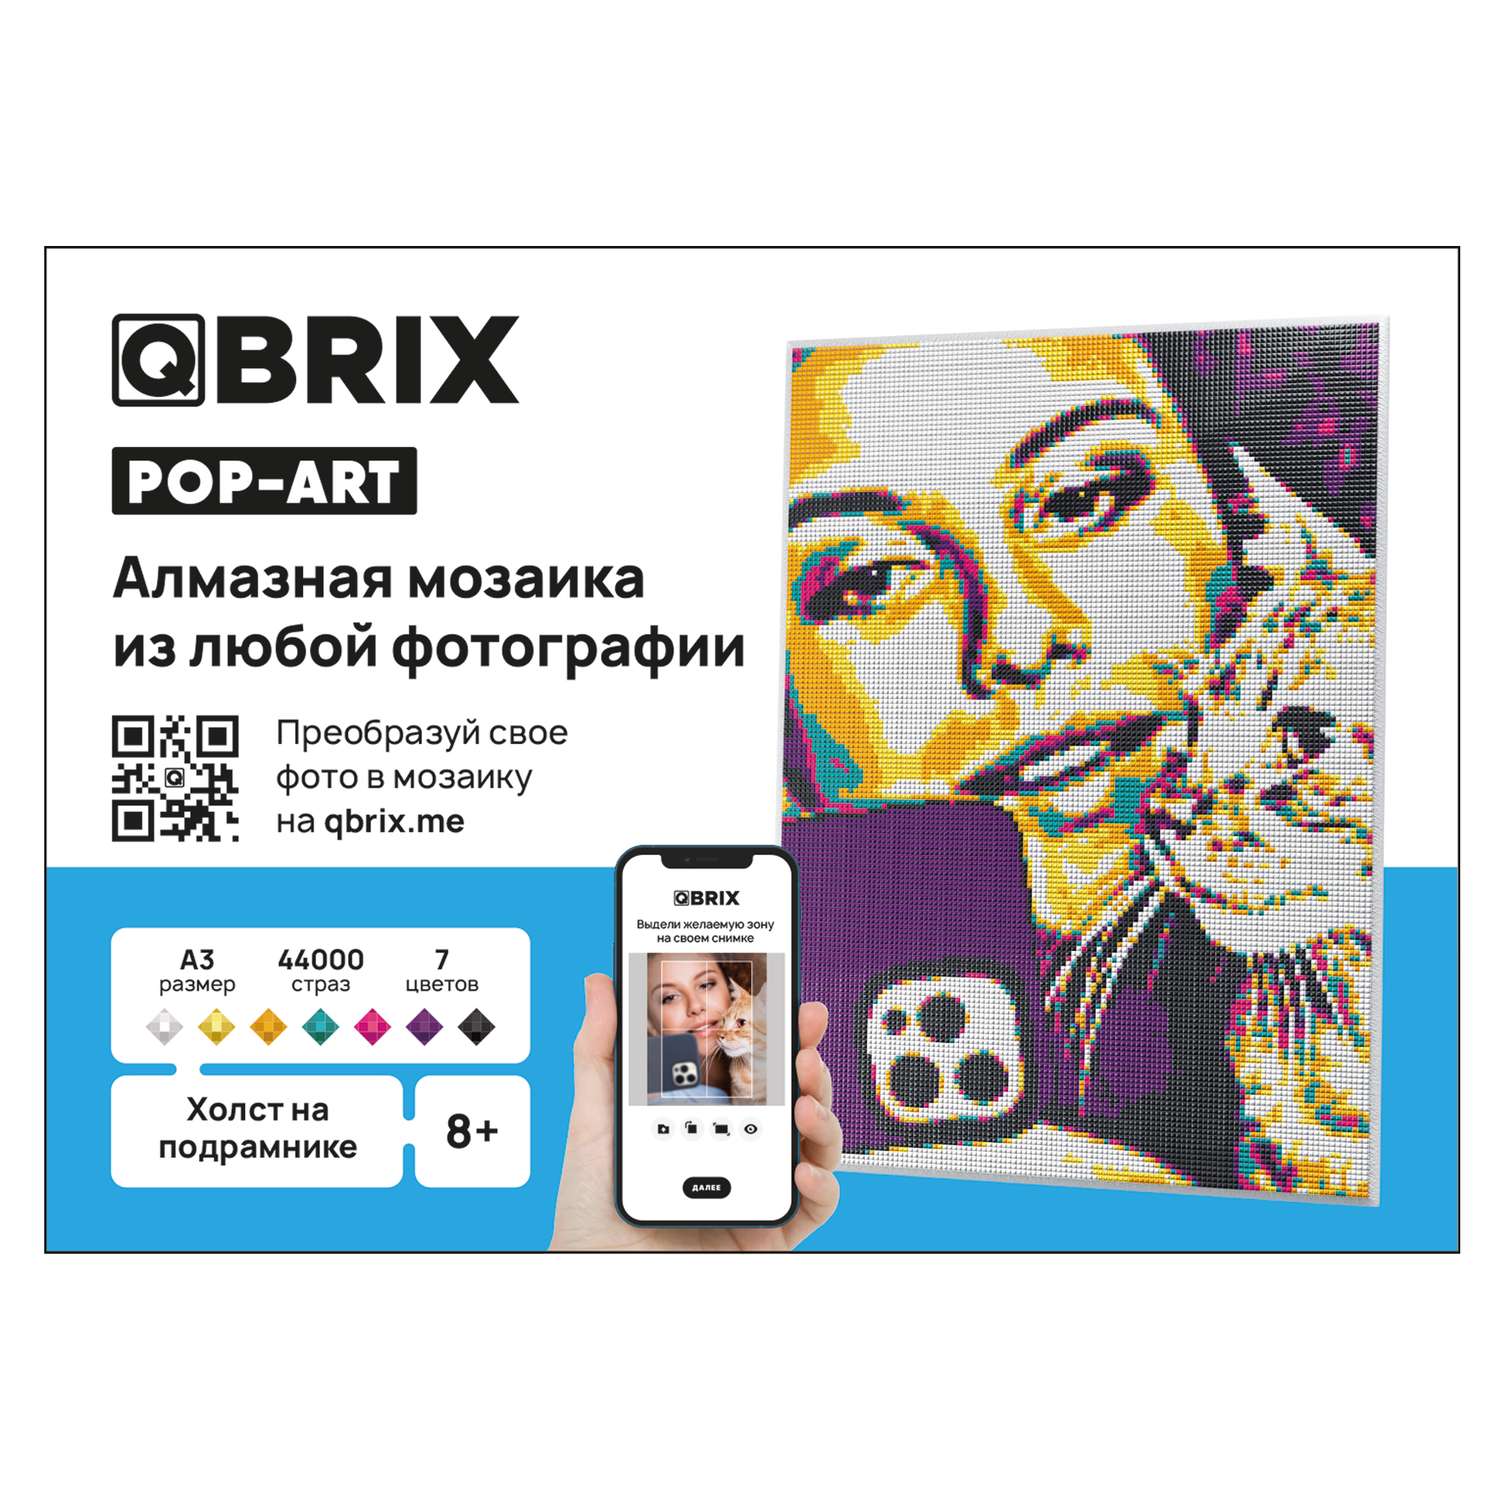 Алмазная мозаика Qbrix Pop-art A3 40009 - фото 10